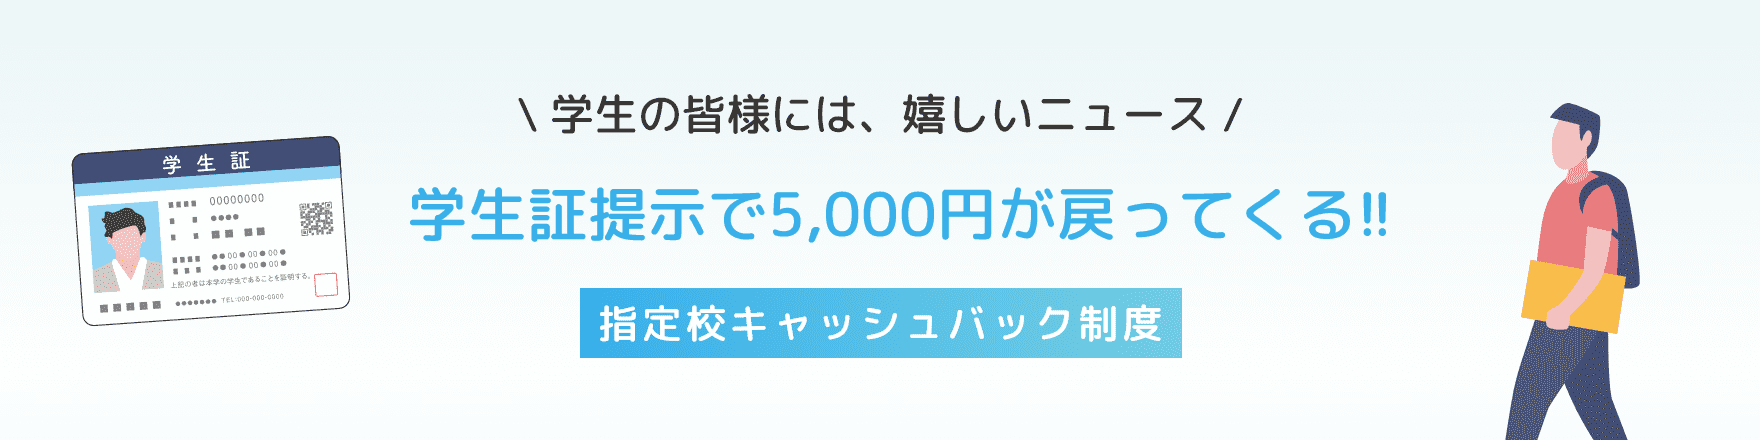 学生の皆様には、嬉しいニュース。学生証提示で5,000円が戻ってくる!!指定校キャッシュバック制度の画像